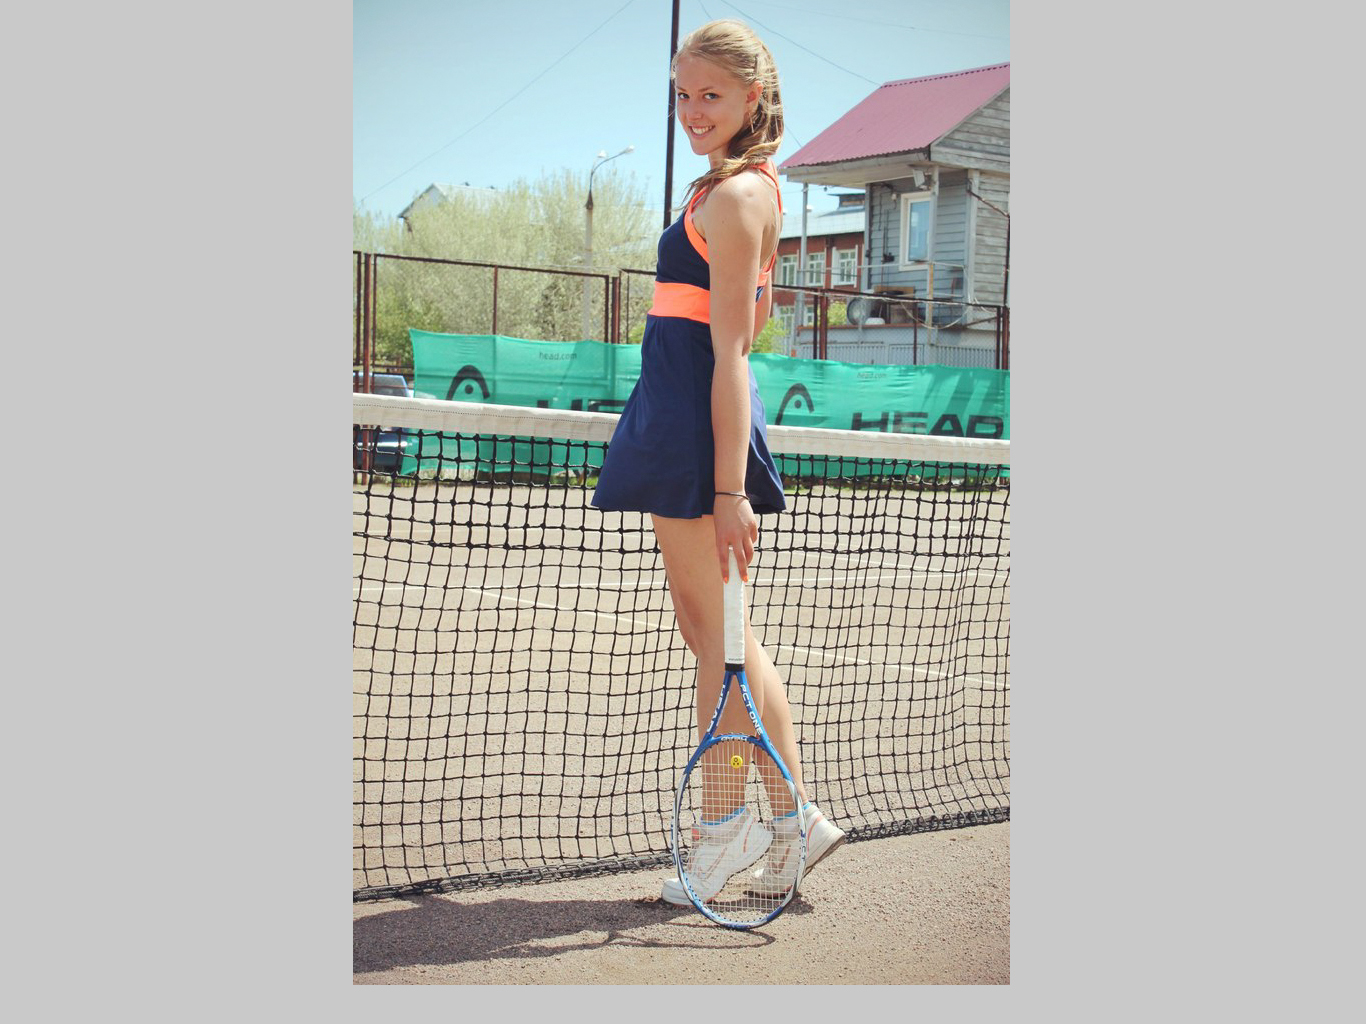 krushevskaya_tennis